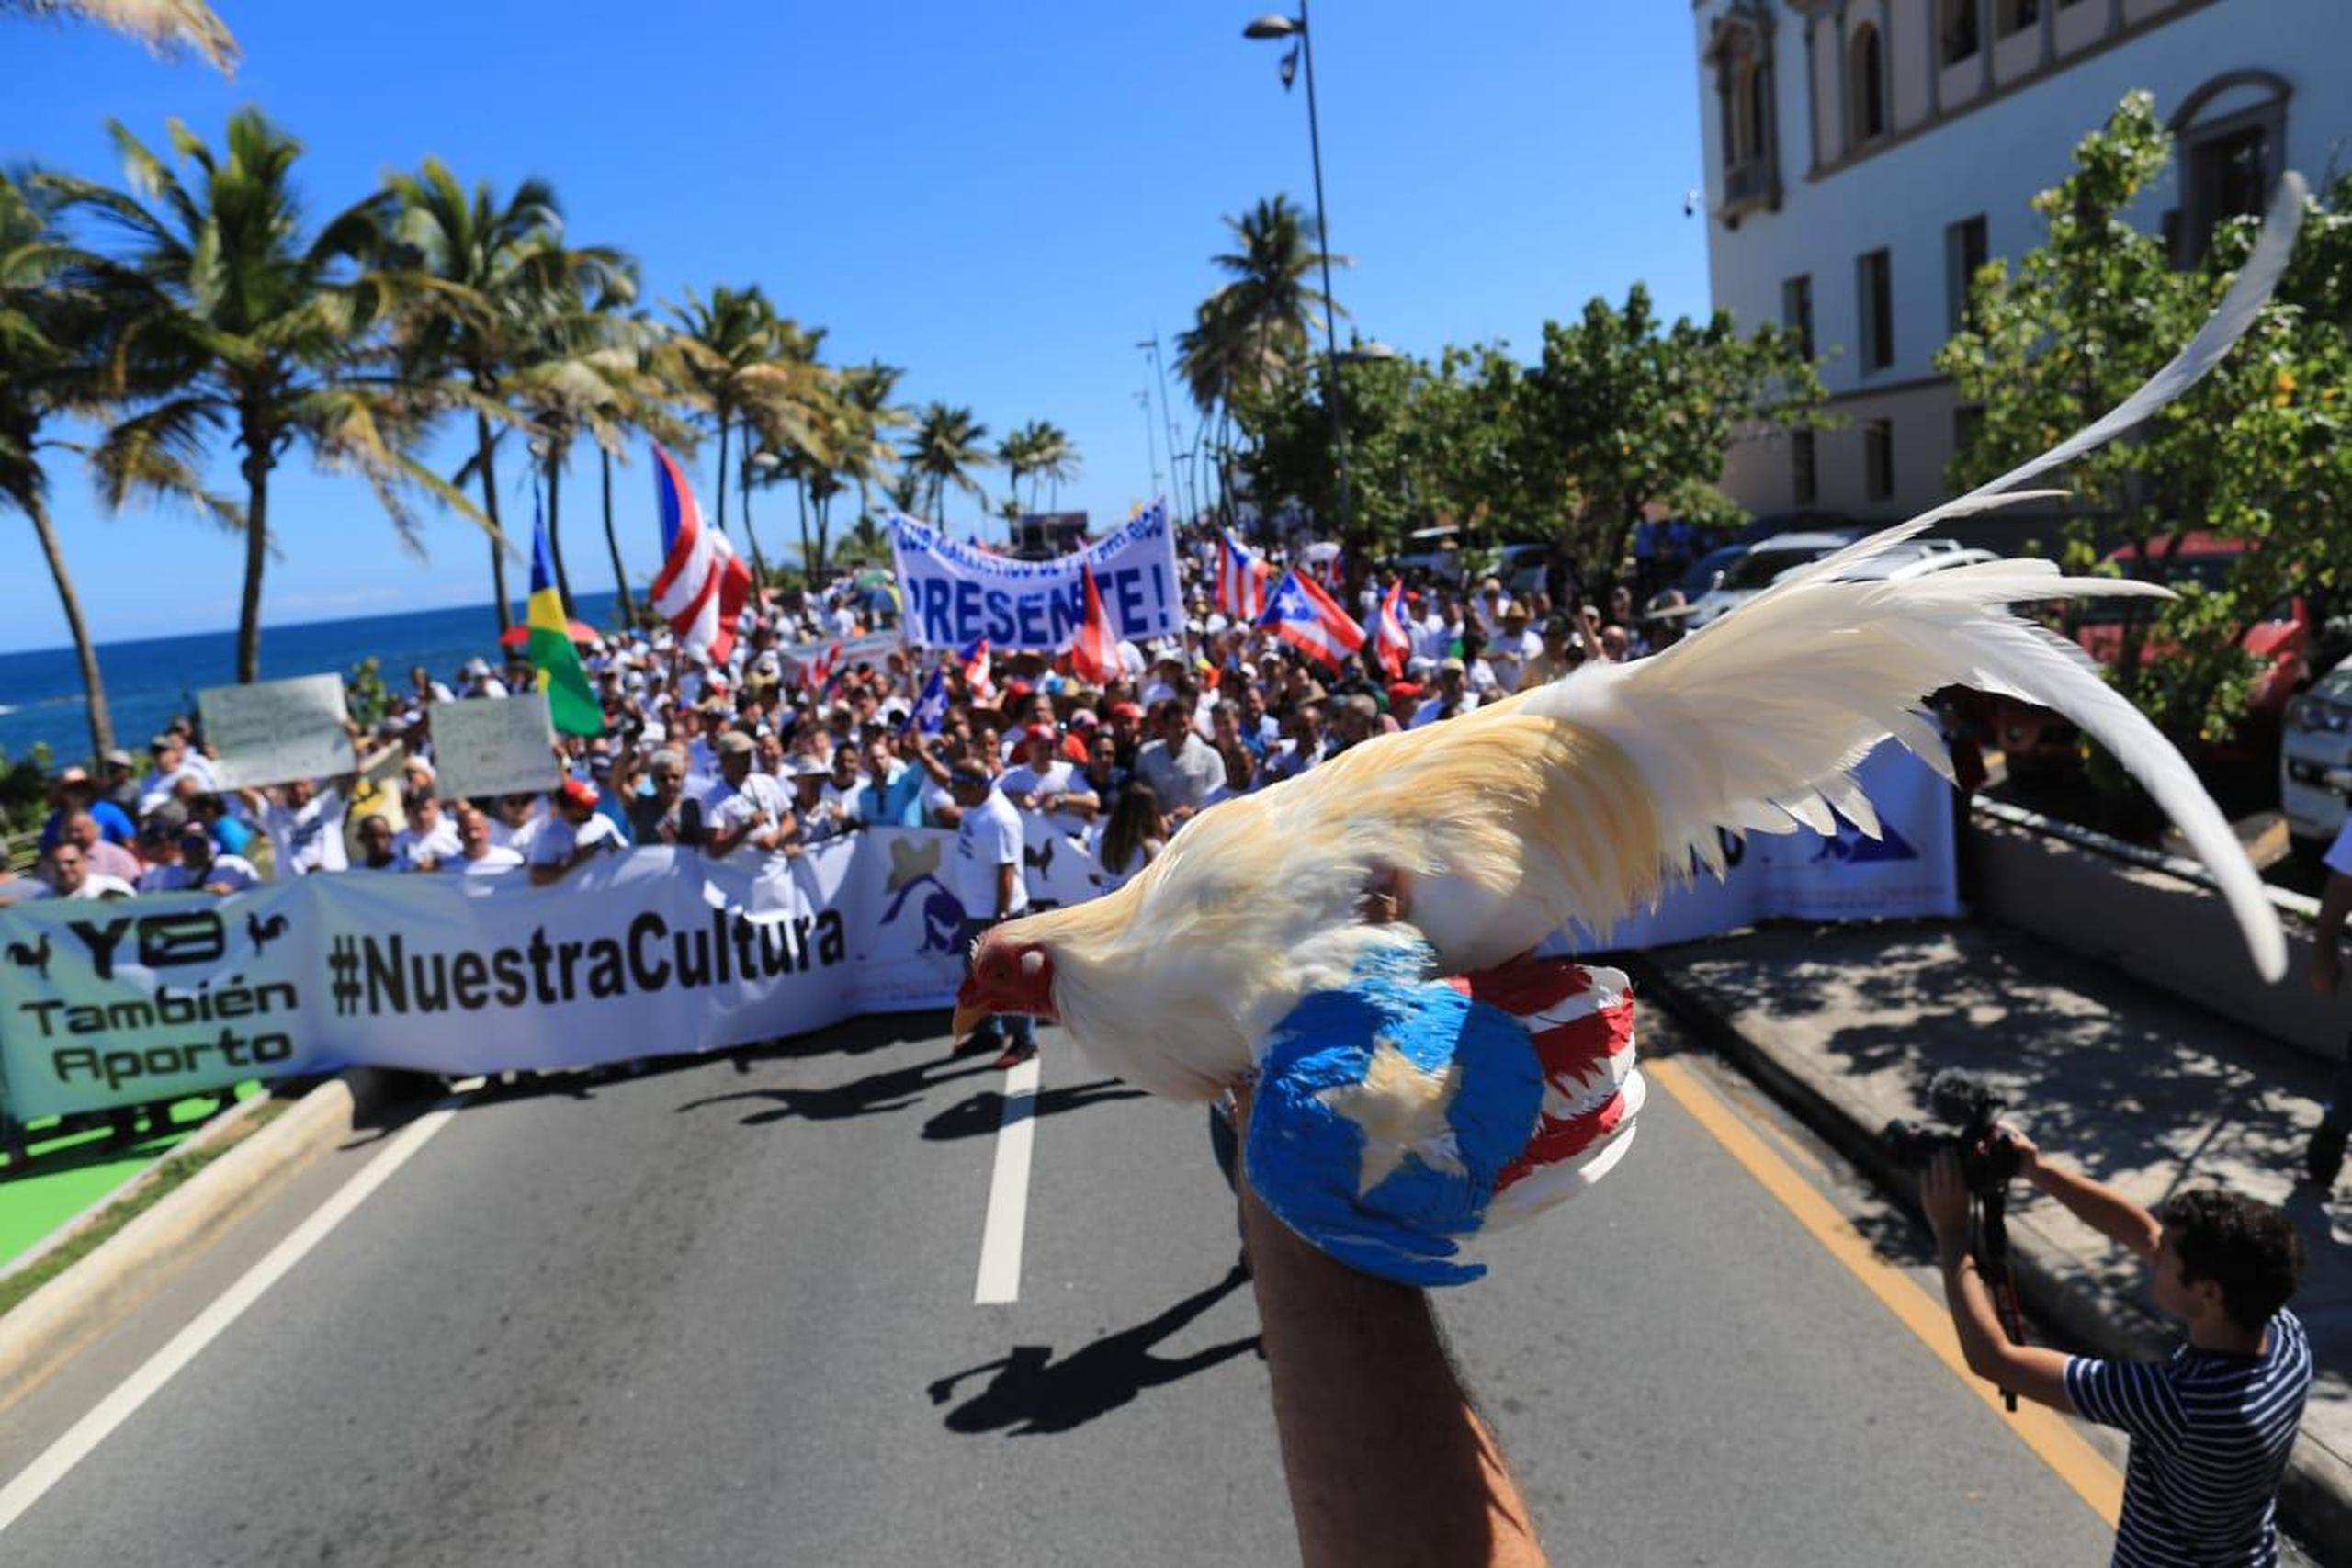 La industria de las peleas de gallos estará prohibida en Puerto Rico y los territorios a partir del 20 de diciembre, según lo establece una ley federal. (GFR Media)